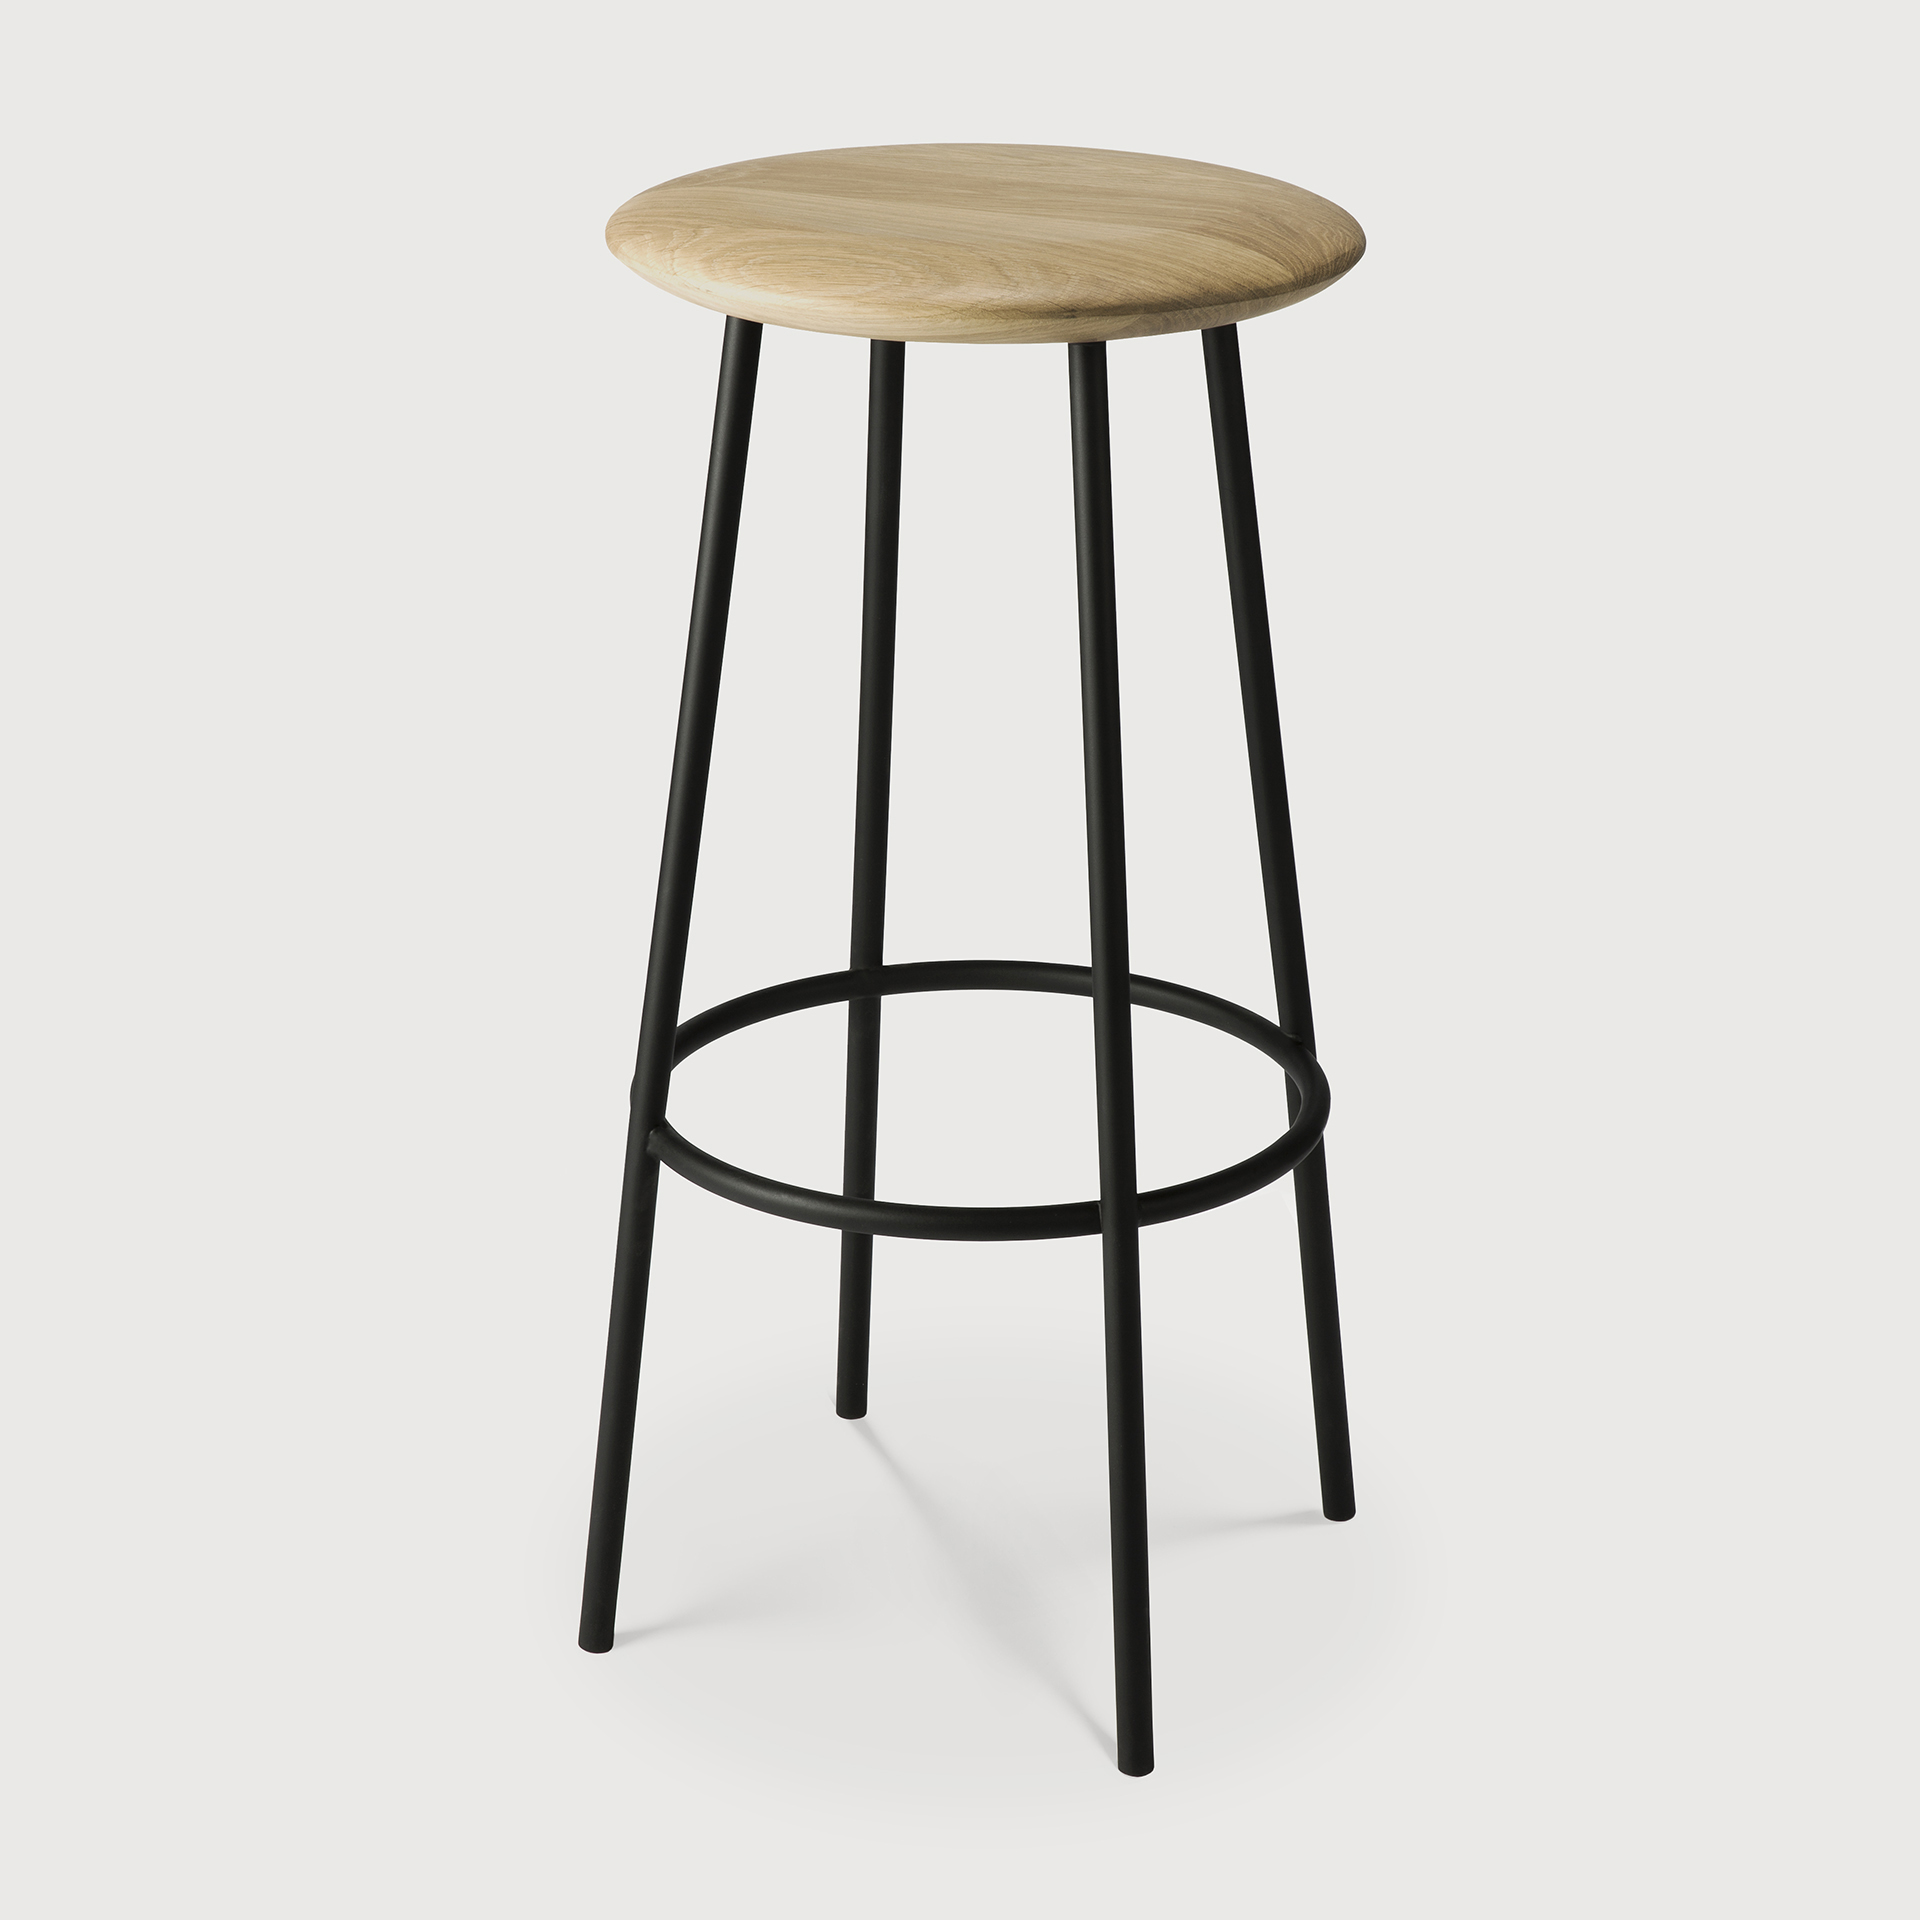 [50076] Baretto bar stool